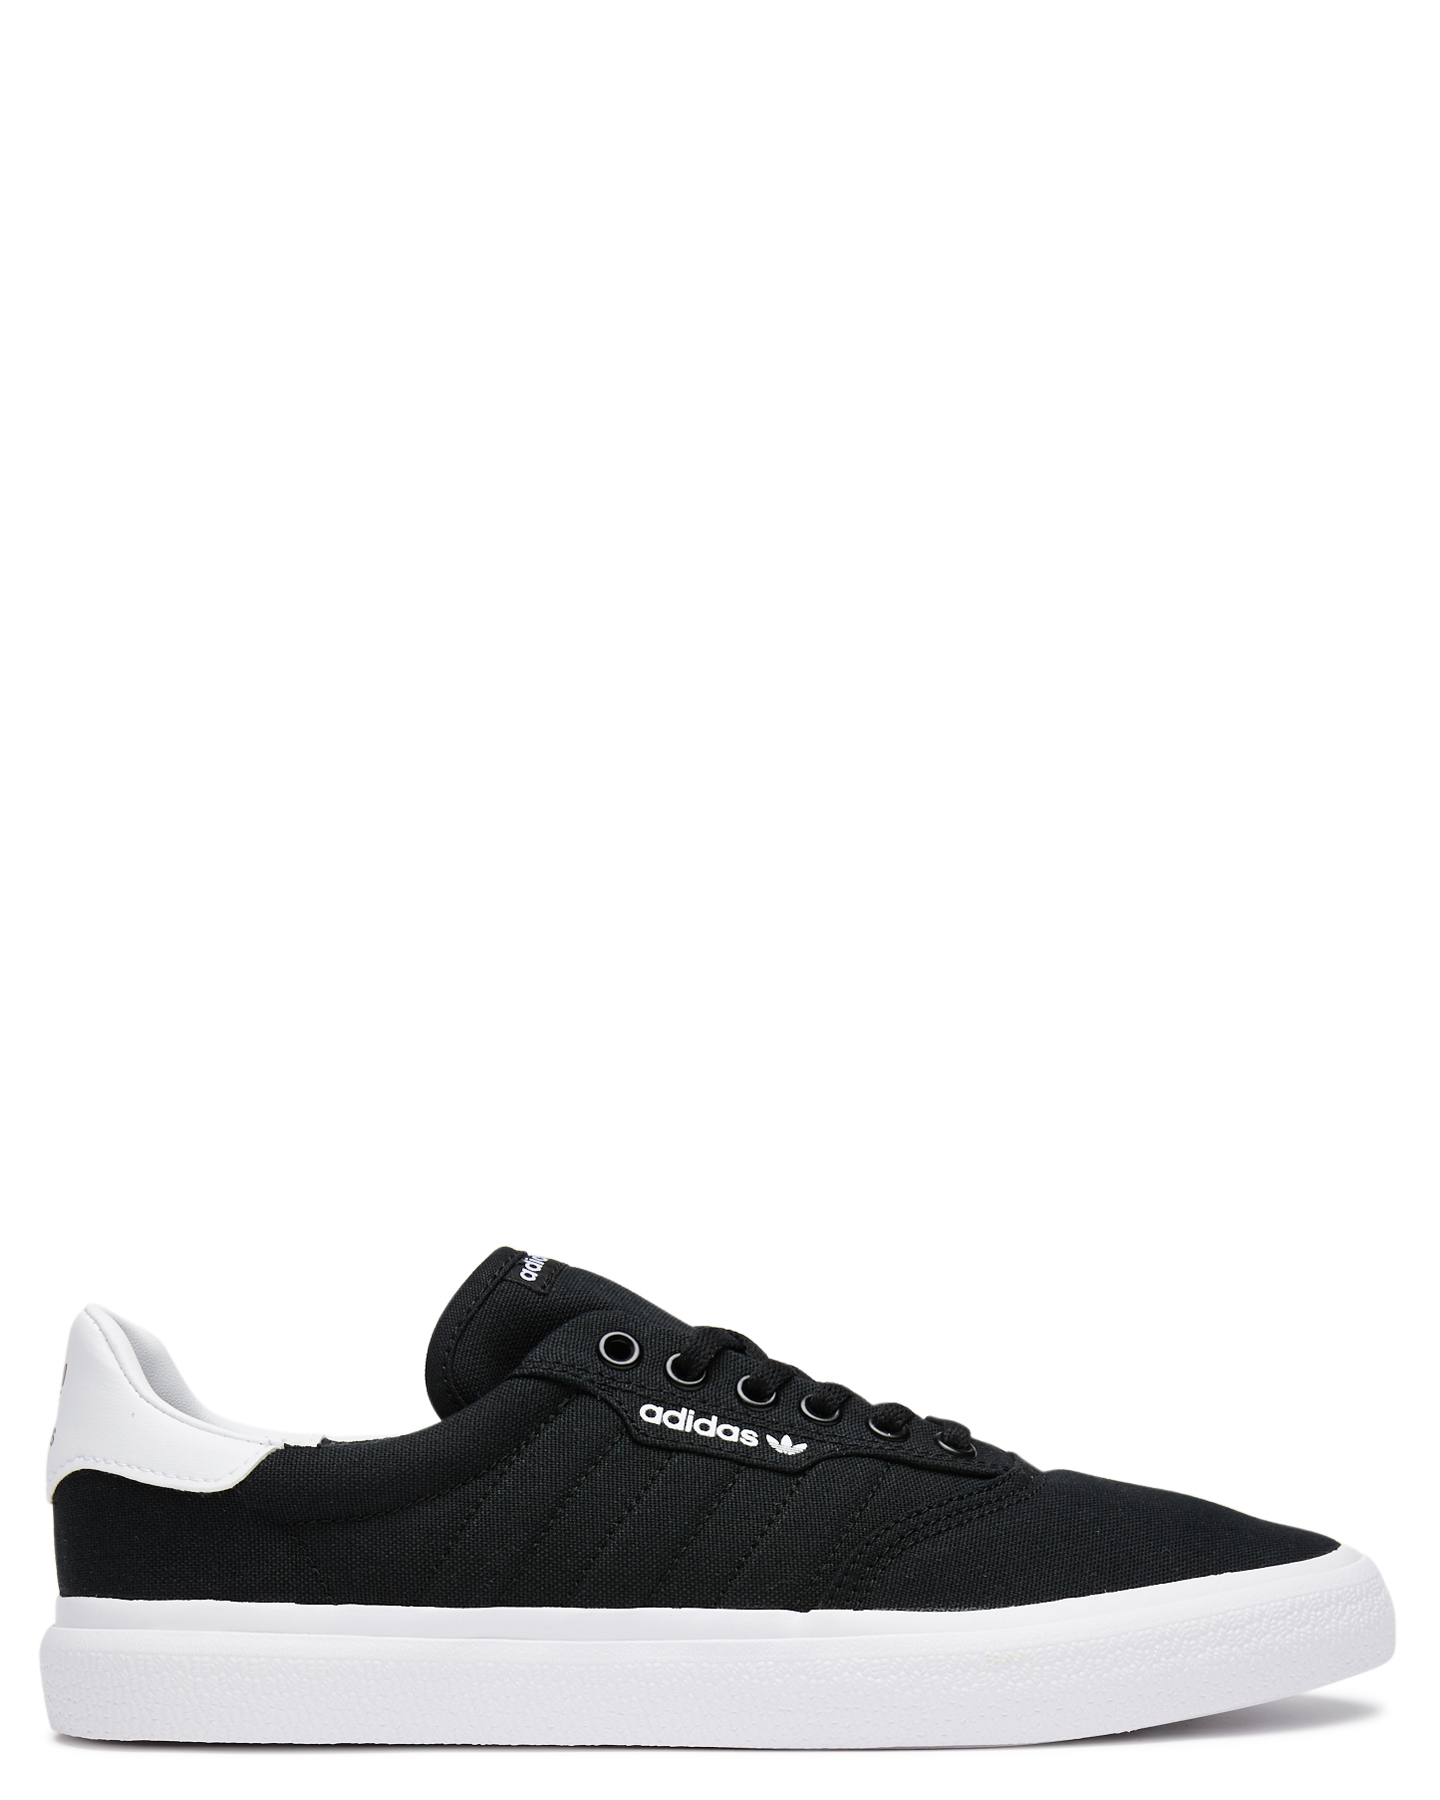 Adidas Womens 3Mc Shoe - Black White 